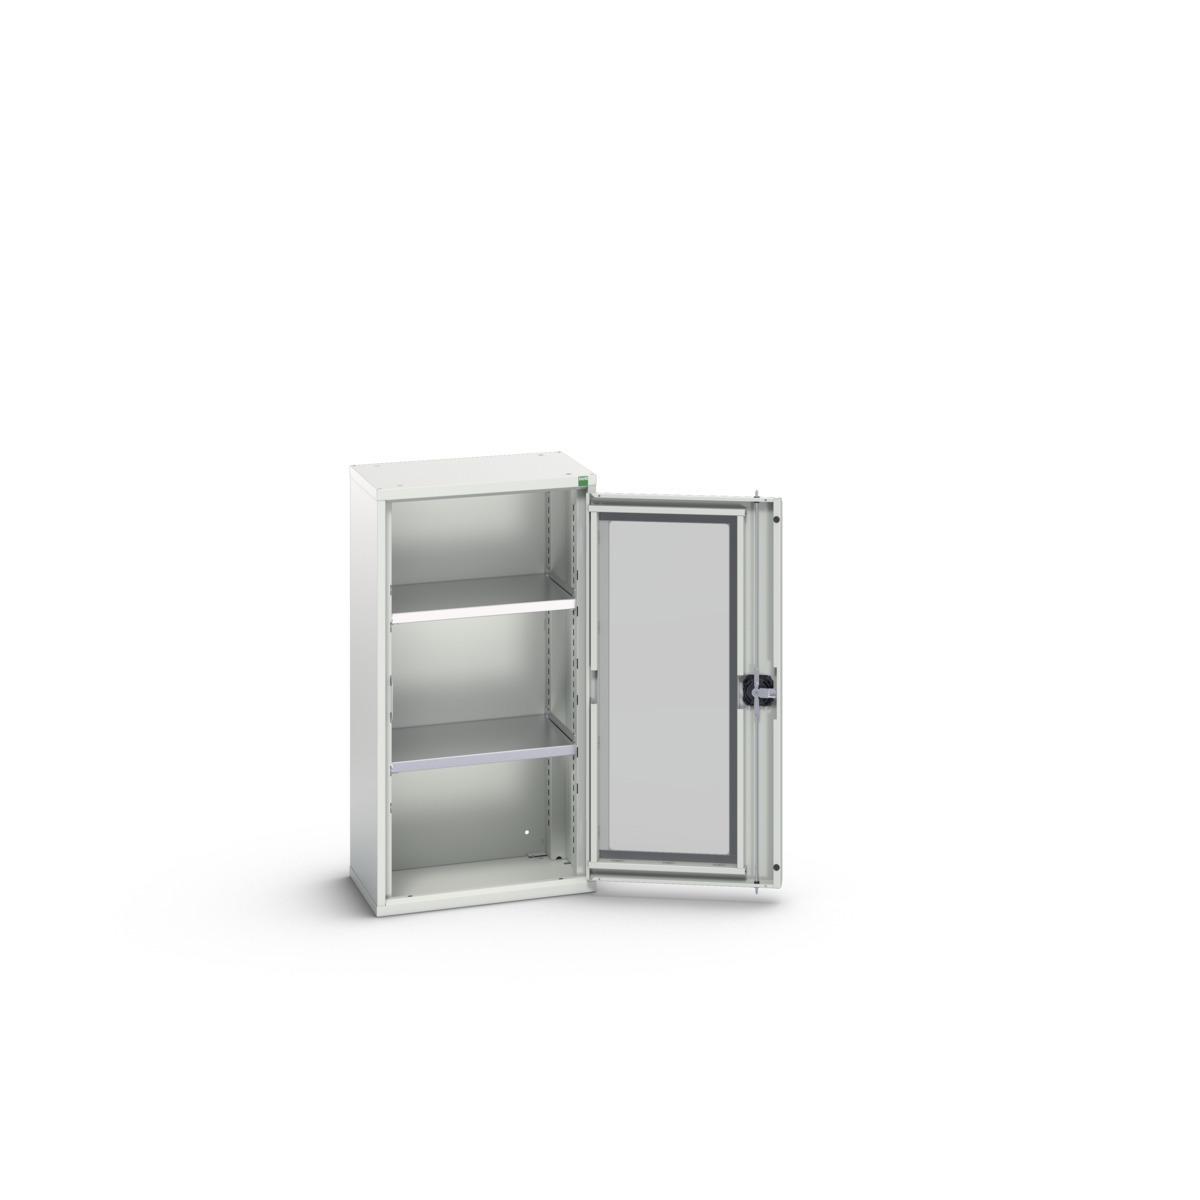 16926072.16 - verso window door cupboard